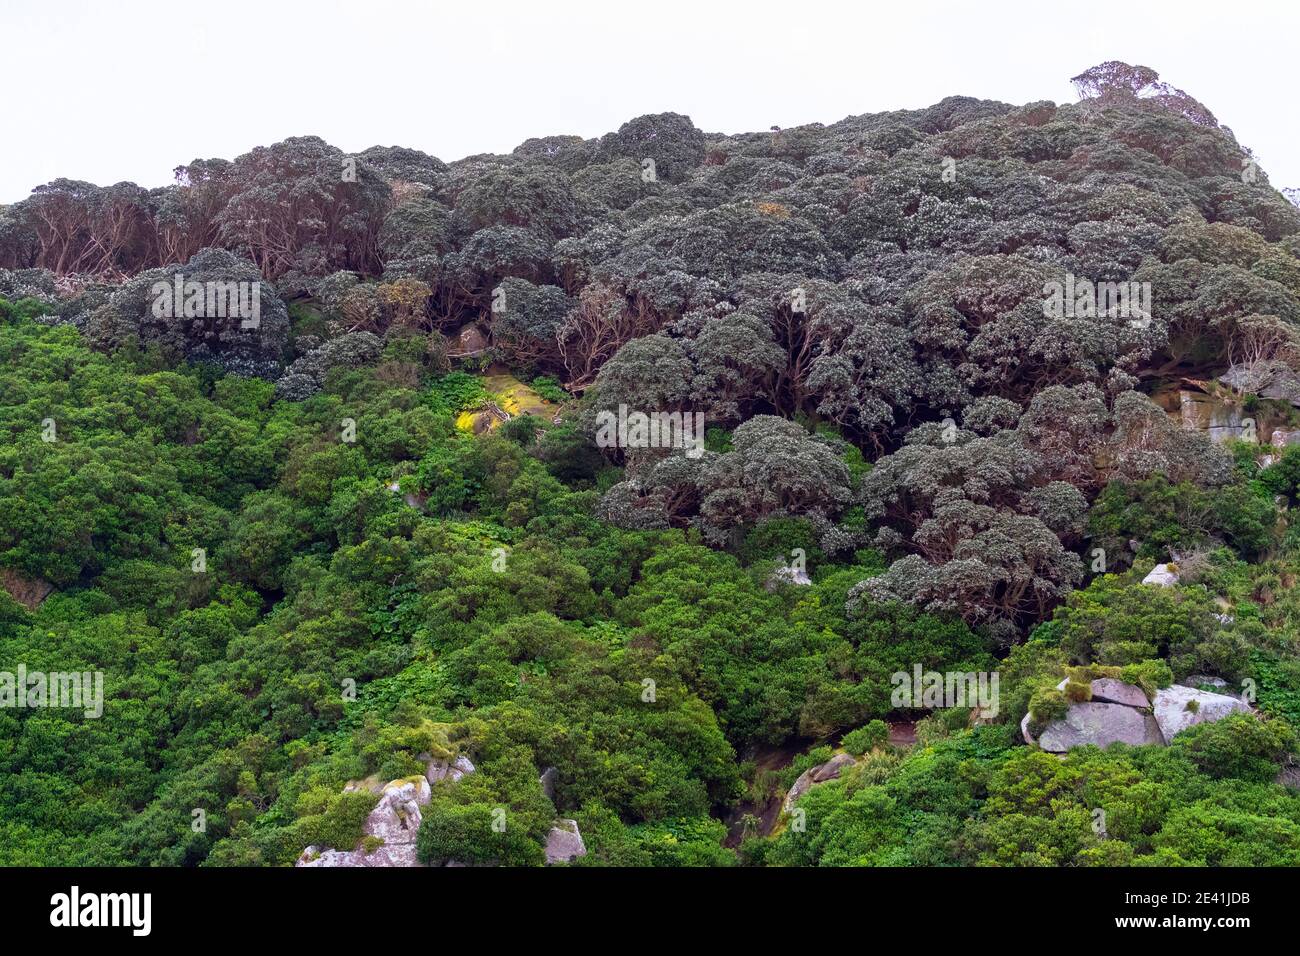 Forêt côtière sur les Snares, colline escarpée couverte de végétation verte indigène, Nouvelle-Zélande, les Snares Banque D'Images